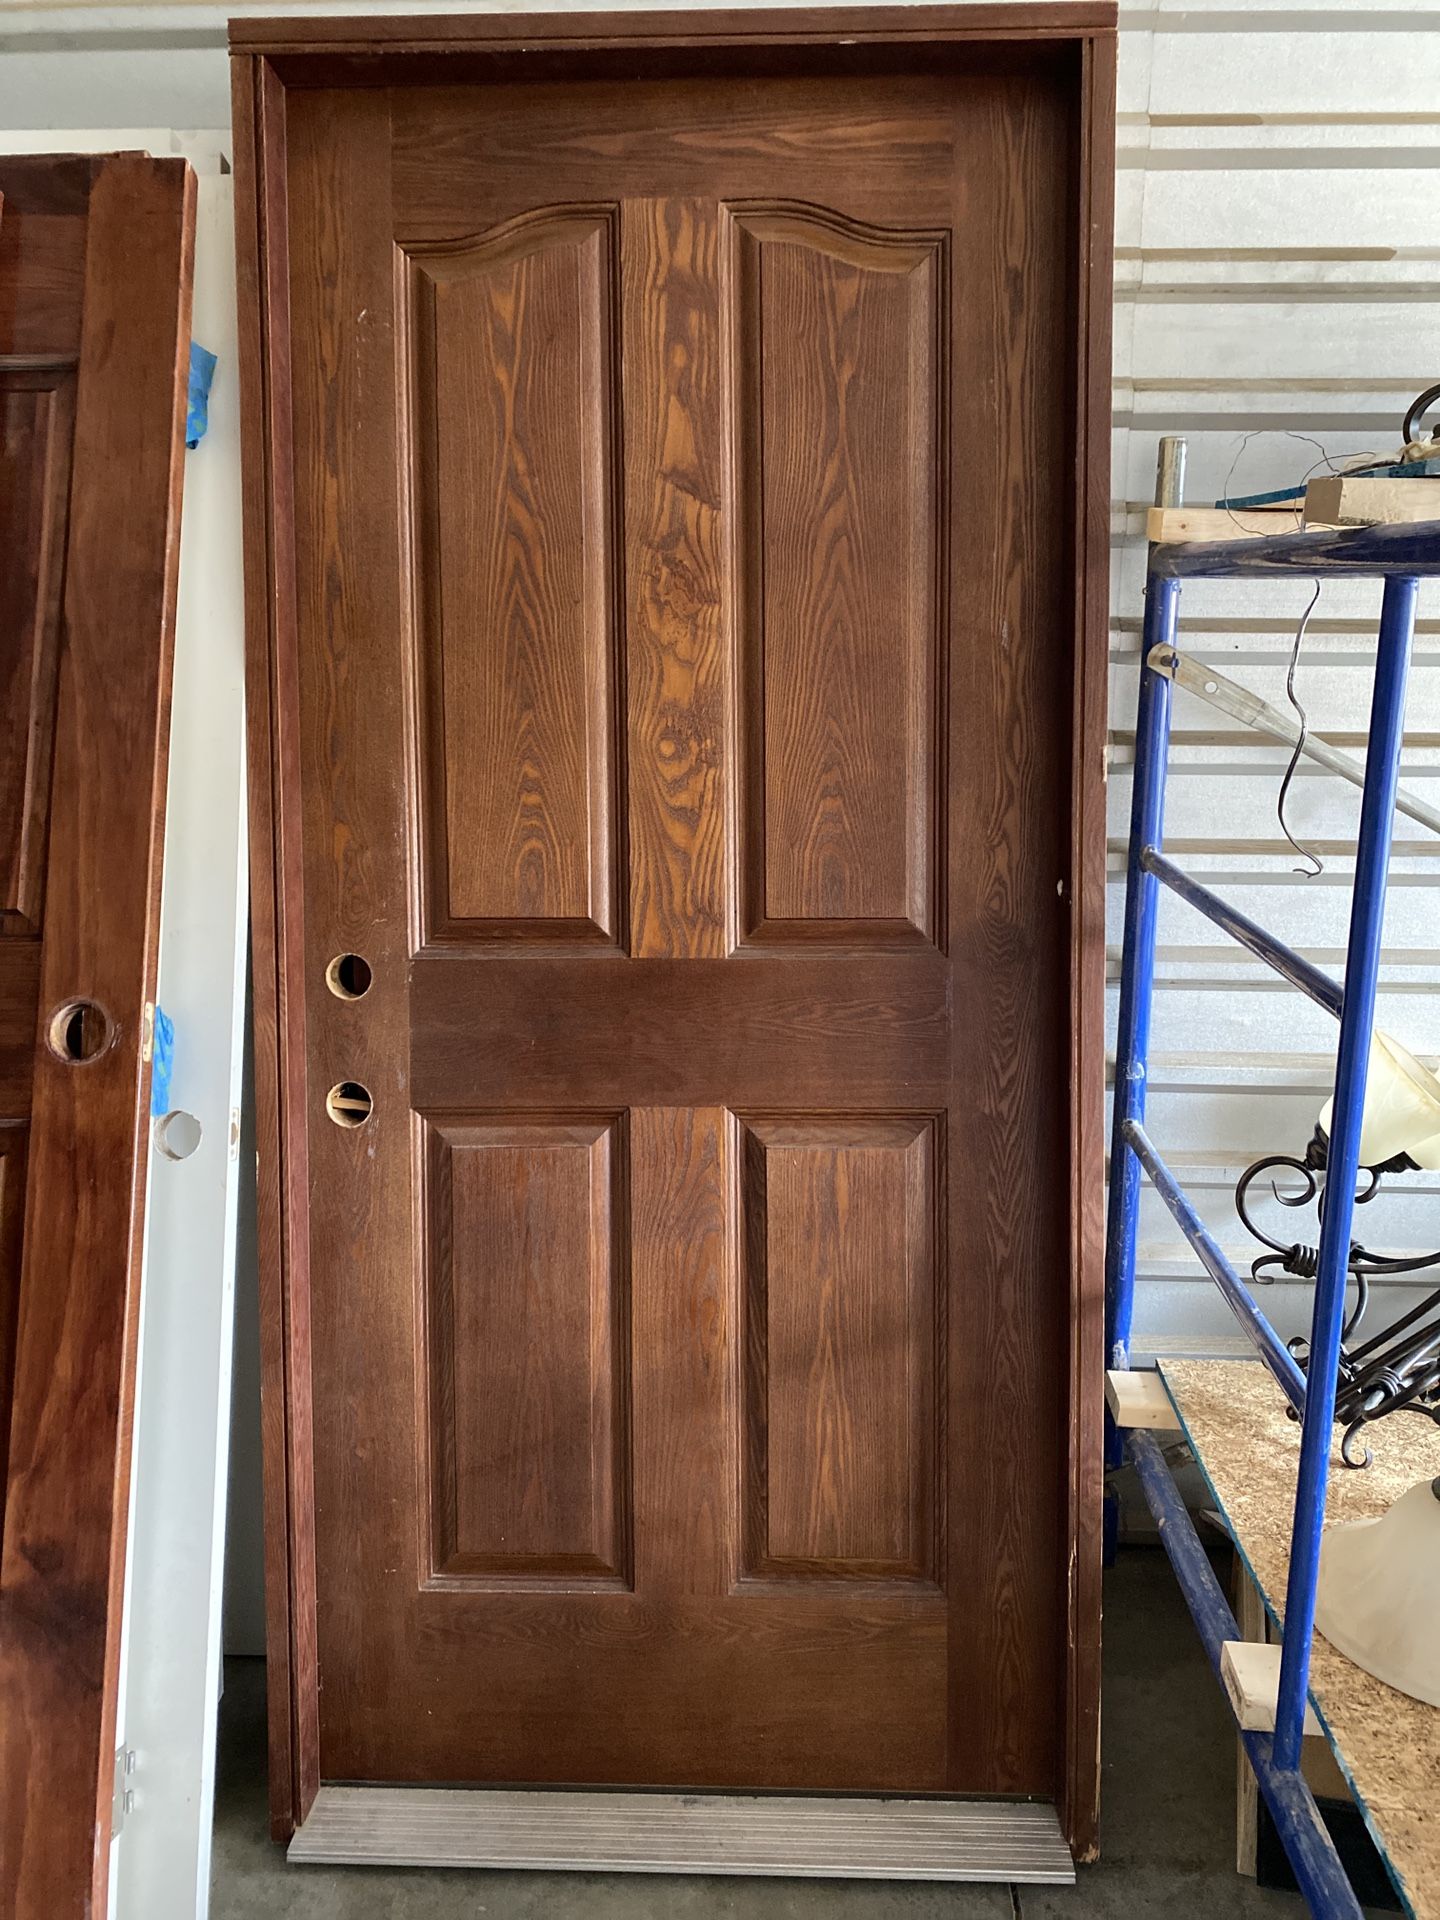 36” Exterior Door With Frame